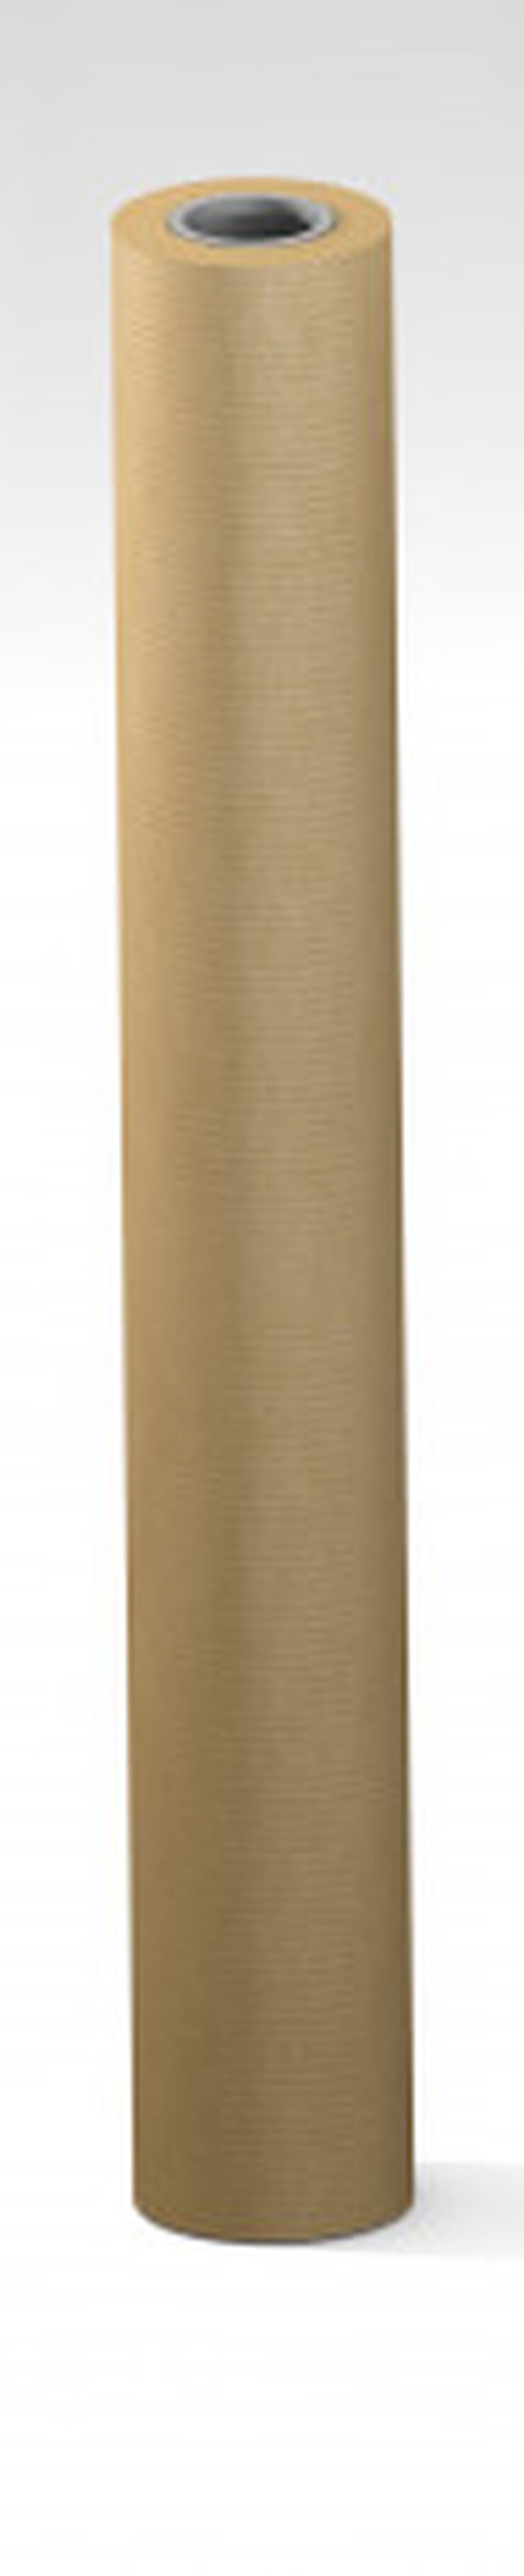 Bobina papel embalar Sadipal color natural 65g 50 m